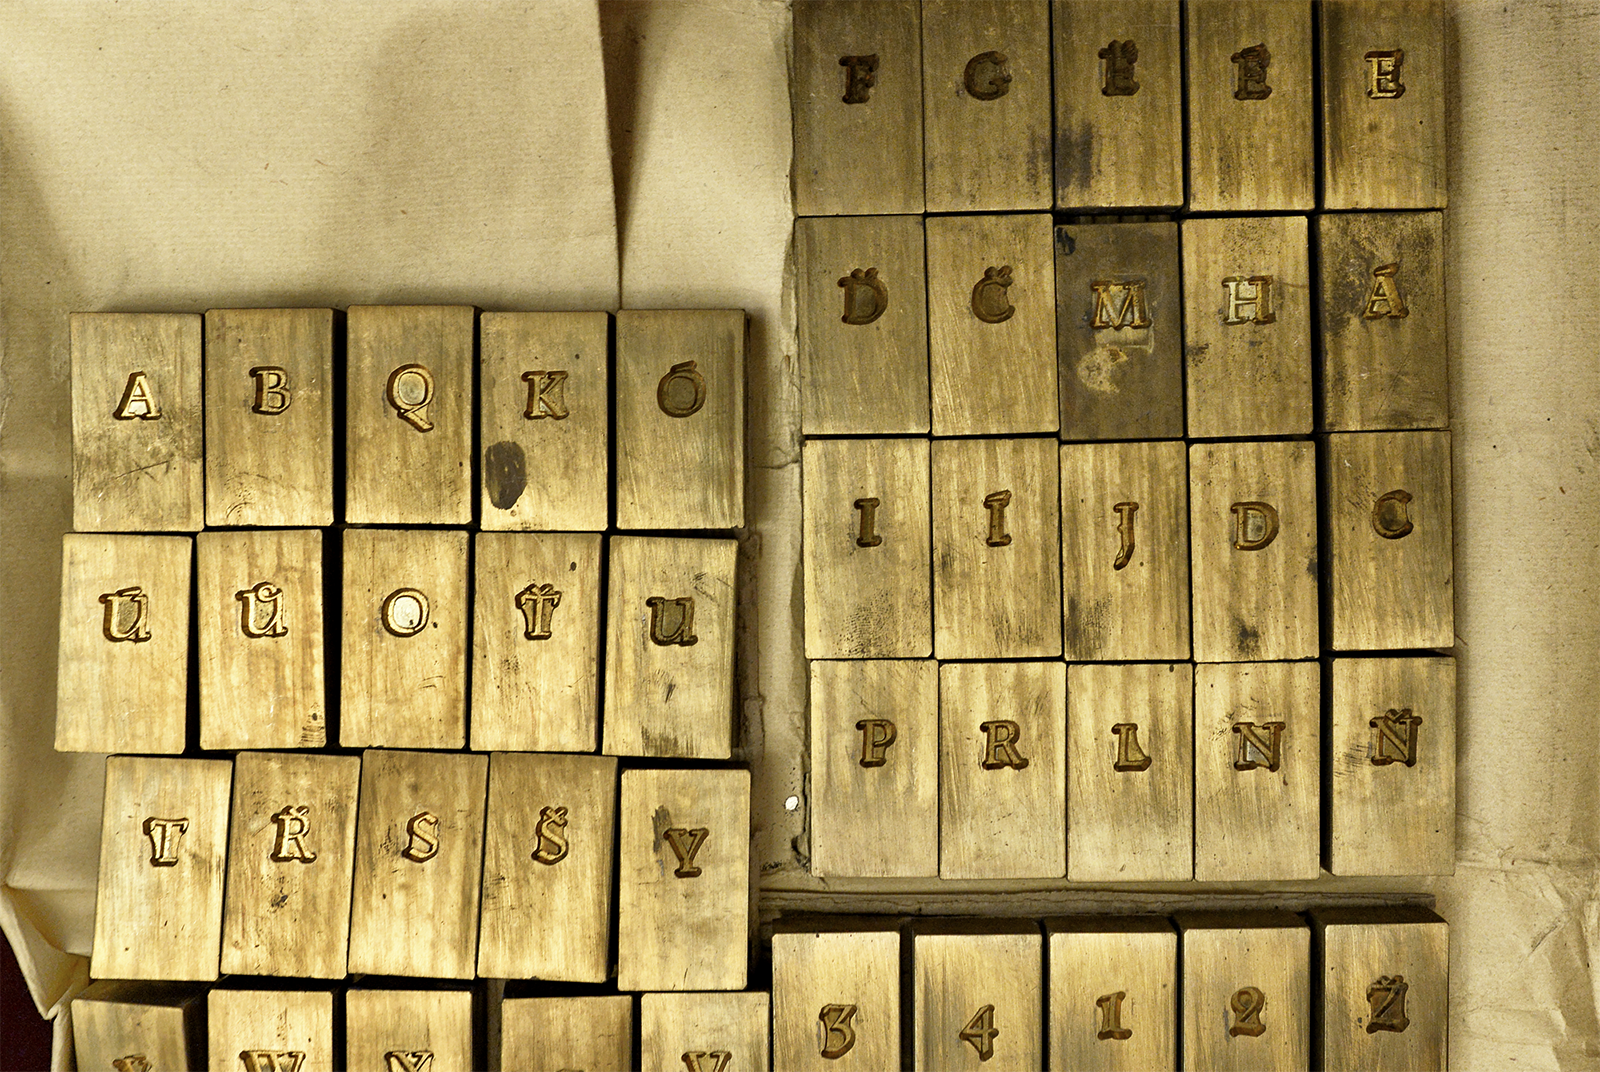 Mosazné matrice z Archivu Poslanecké sněmovny jsou patrně jediné dochované matrice Menhartova typografického písma Parlament. Vedle matric je v archivu uložena i dokumentace k výrobě a předání písma [4]